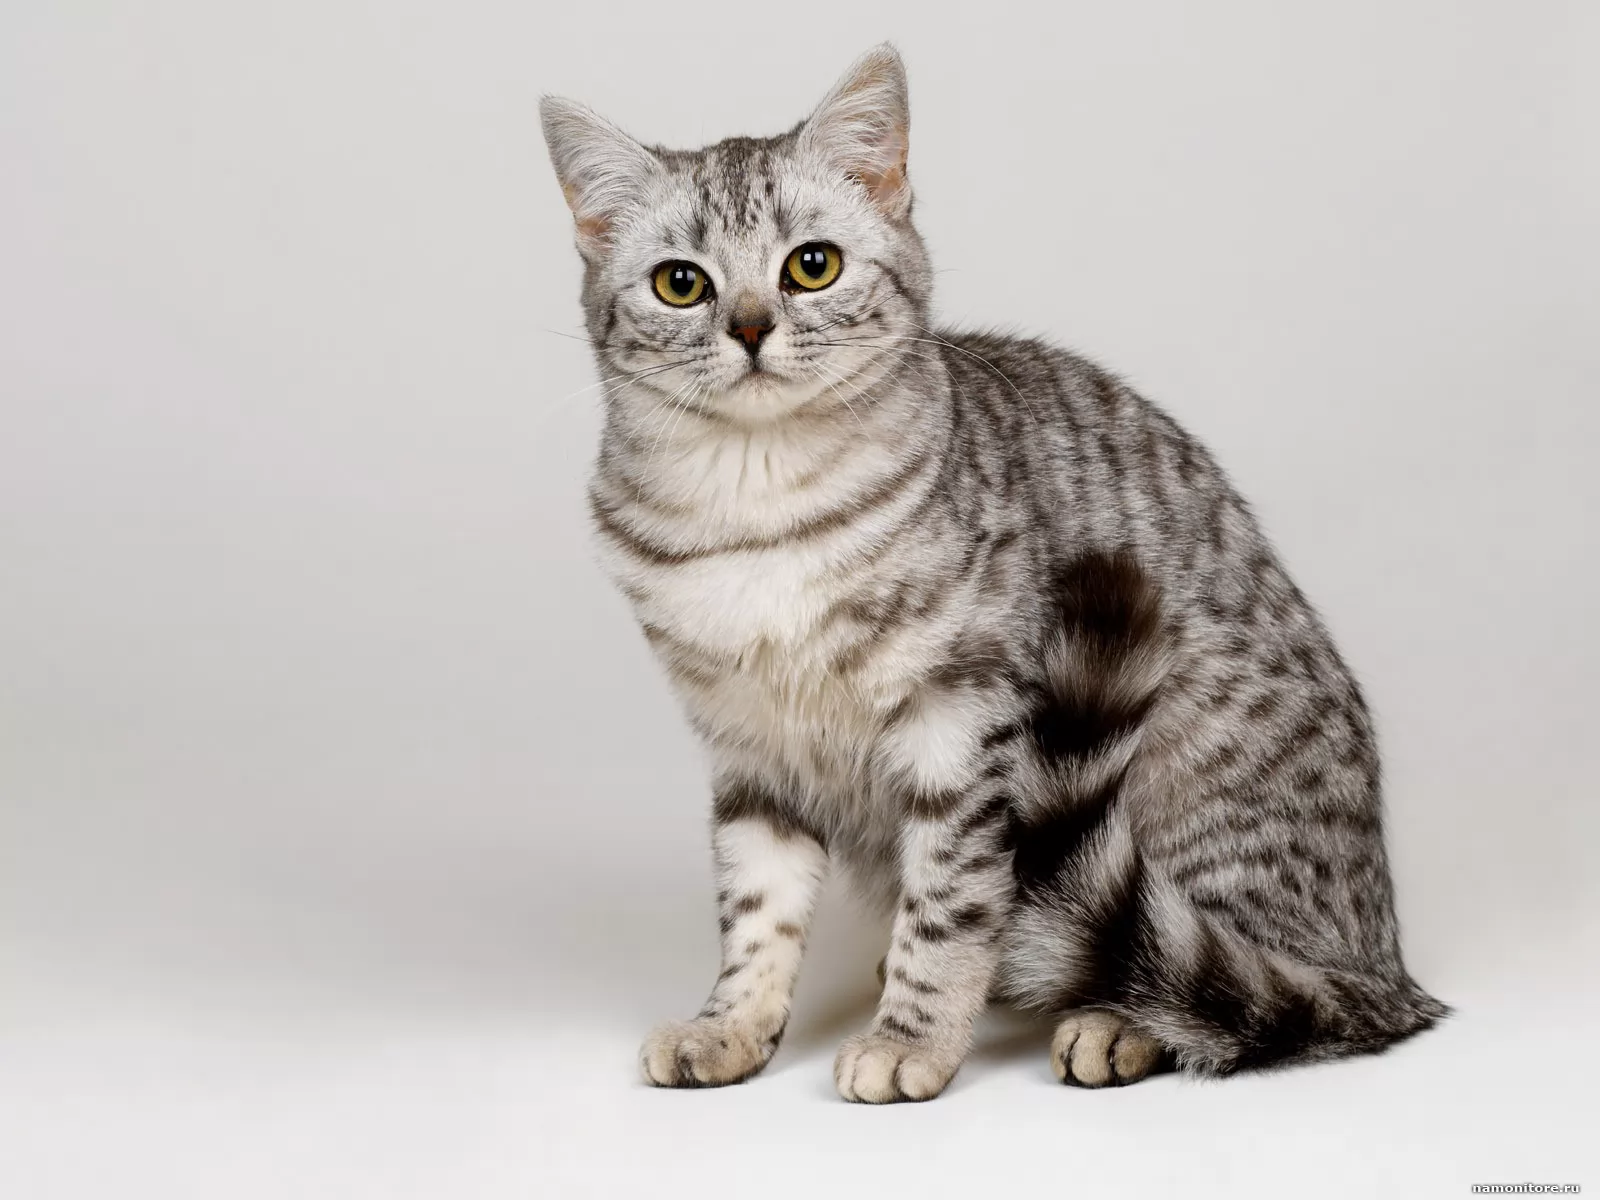 Полная киса. Табби макрель. Британская Сильвер табби. Британский короткошерстный кот полосатый. Табби макрель тигровый.